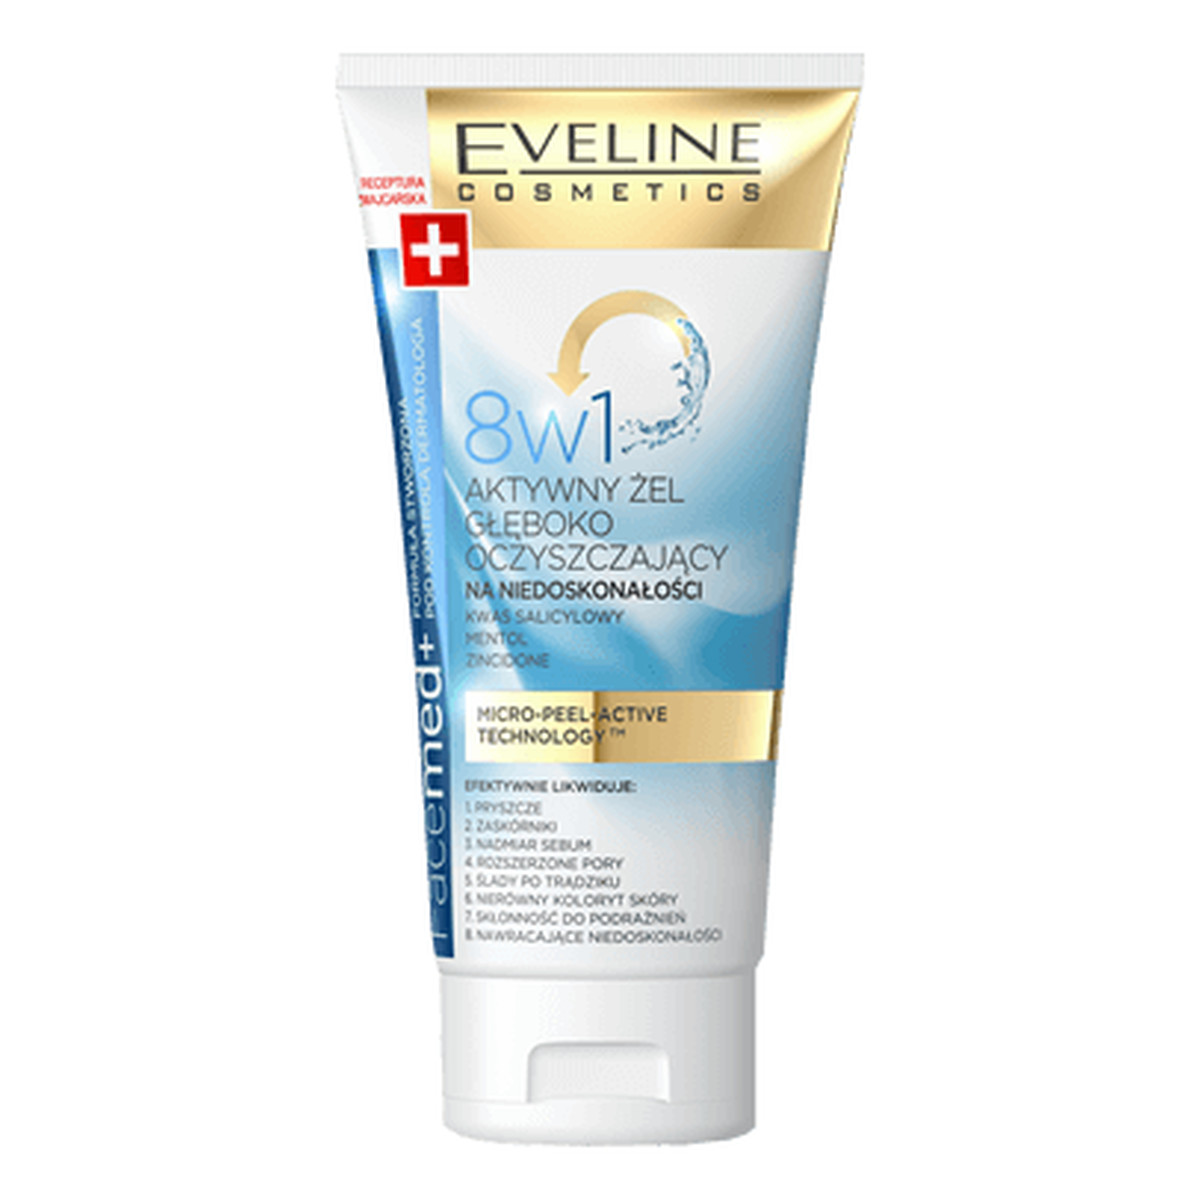 Eveline Facemed+ aktywny krem - żel głęboko oczyszczający 8w1 do mycia twarzy 150ml